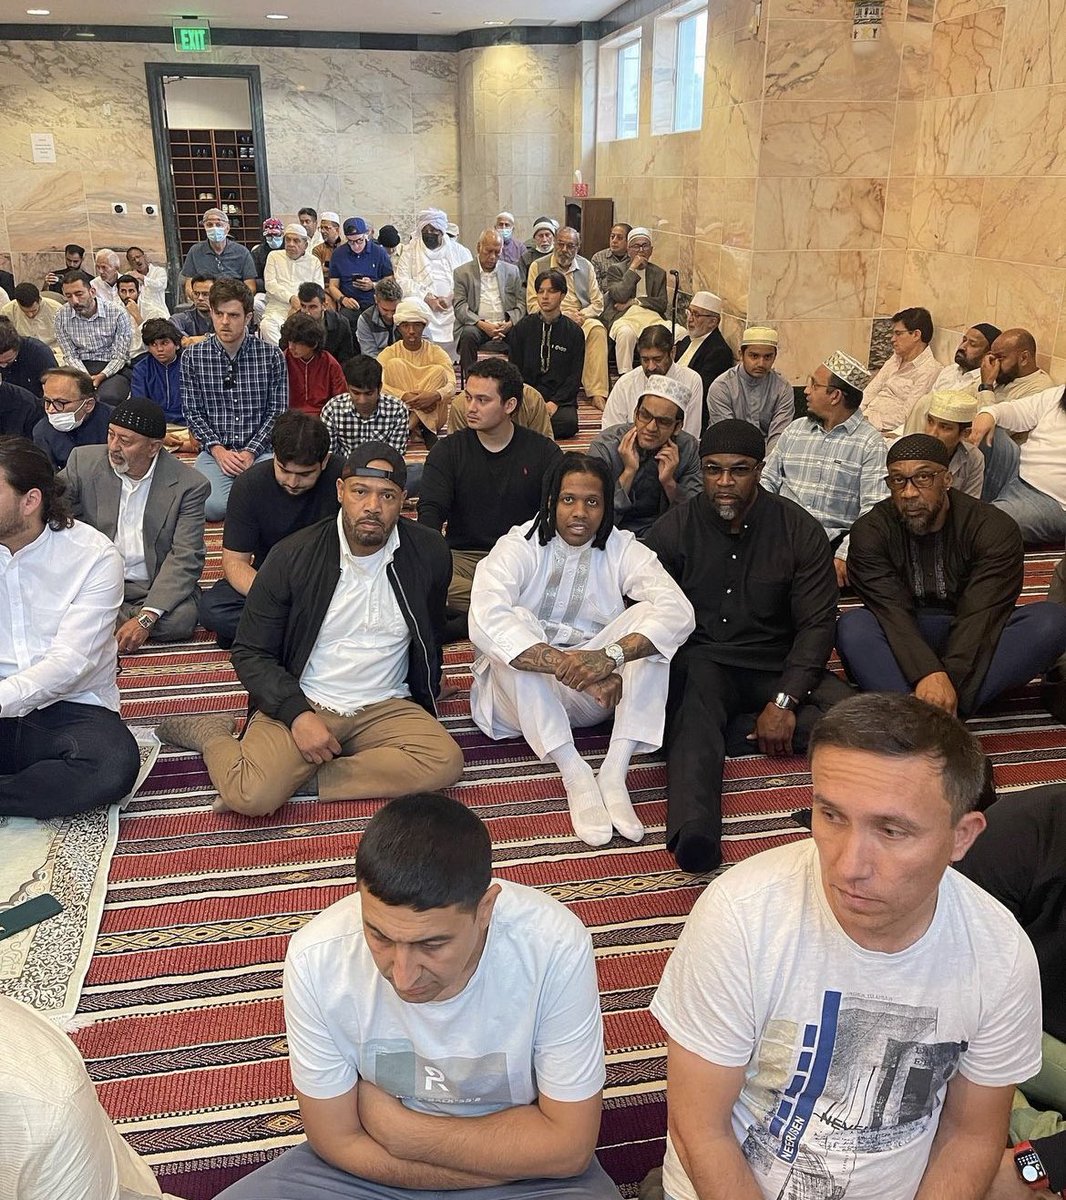 Lil Durk attending communal prayer at a Mosque 🙏